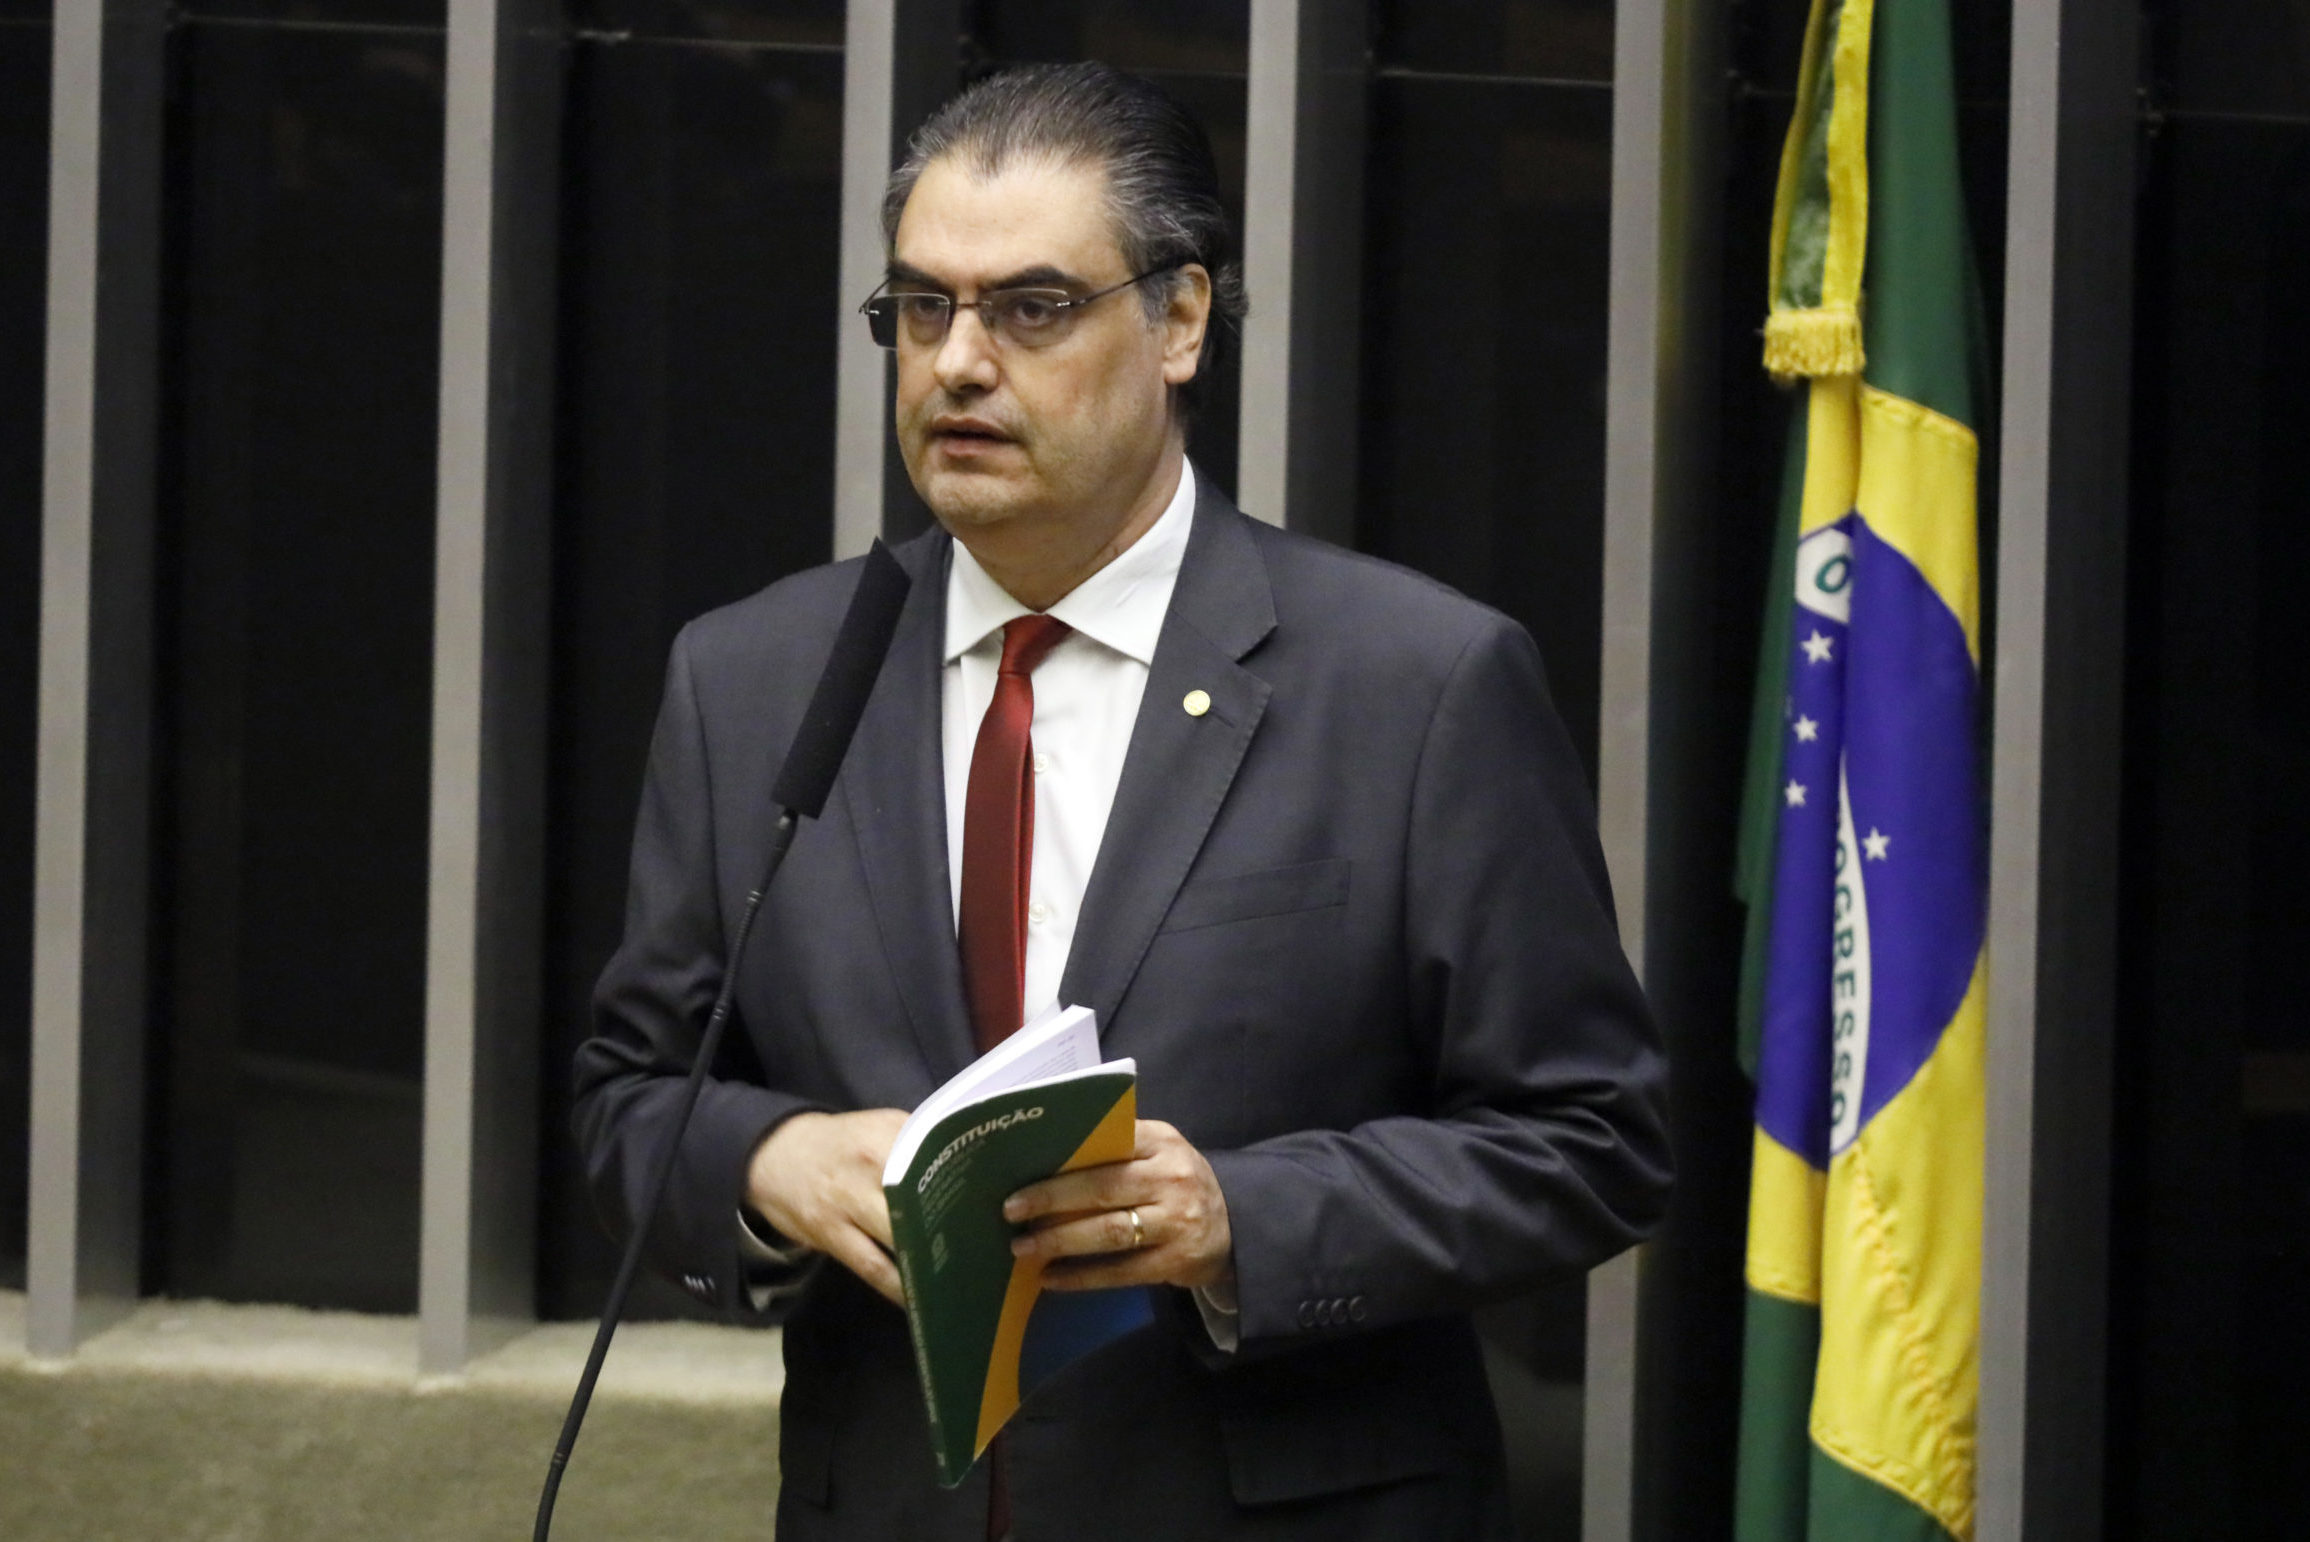 Lafayette de Andrada Republicanos/MG) preside a comissão do novo Código Brasileiro de Energia Elétrica na Câmara dos Deputados. Foto por Luis Macedo